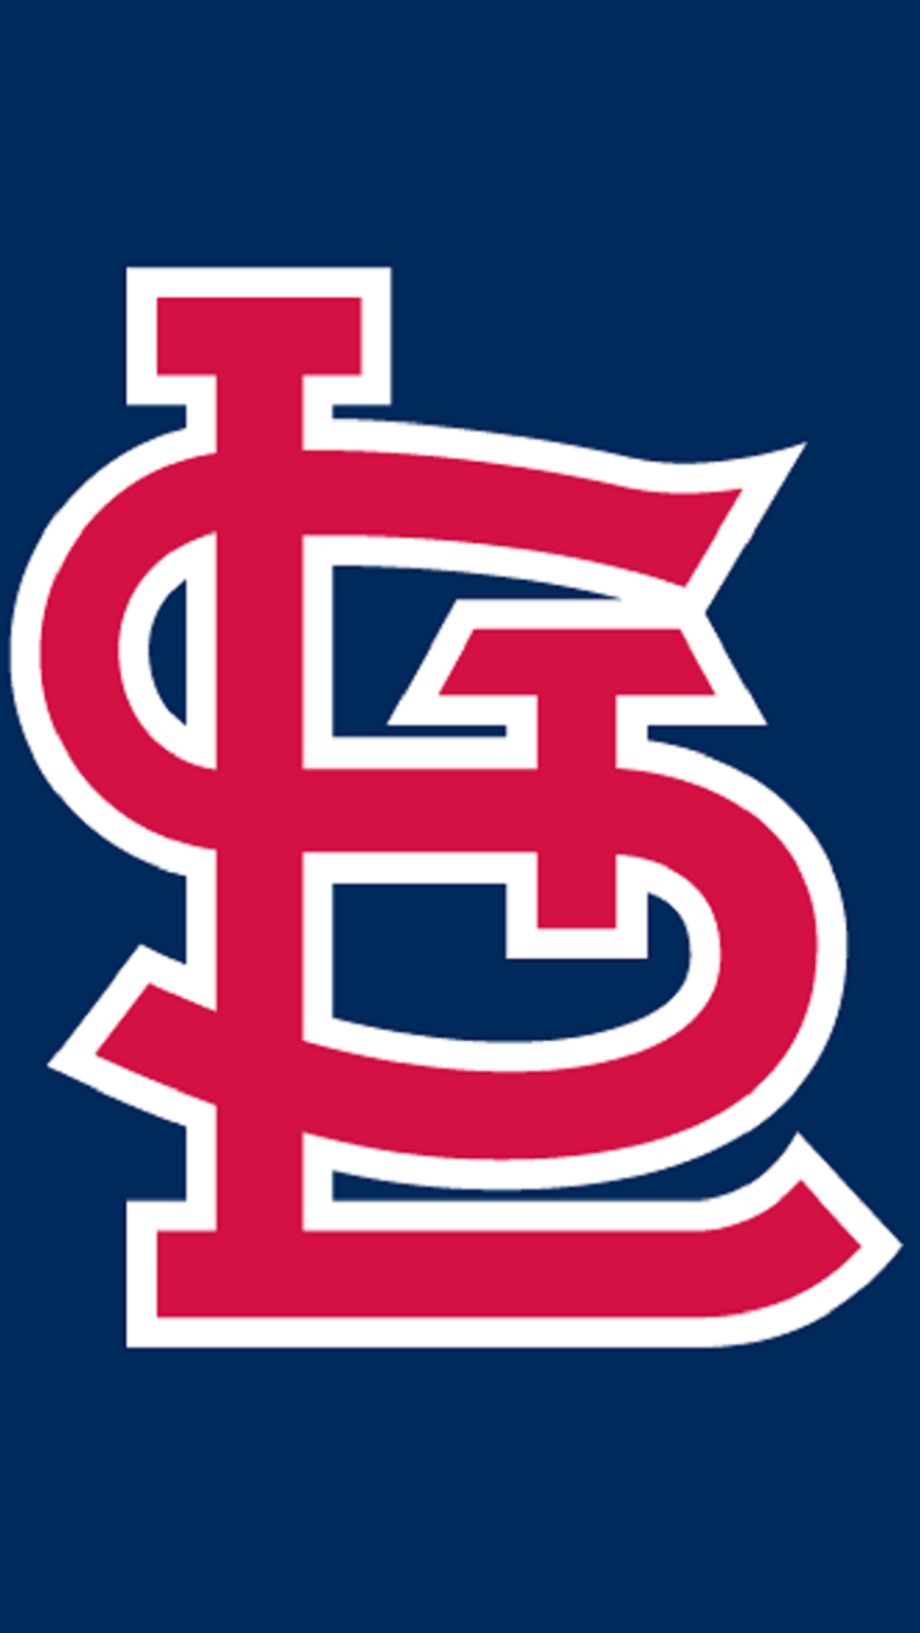 St louis cardinals logo iphone